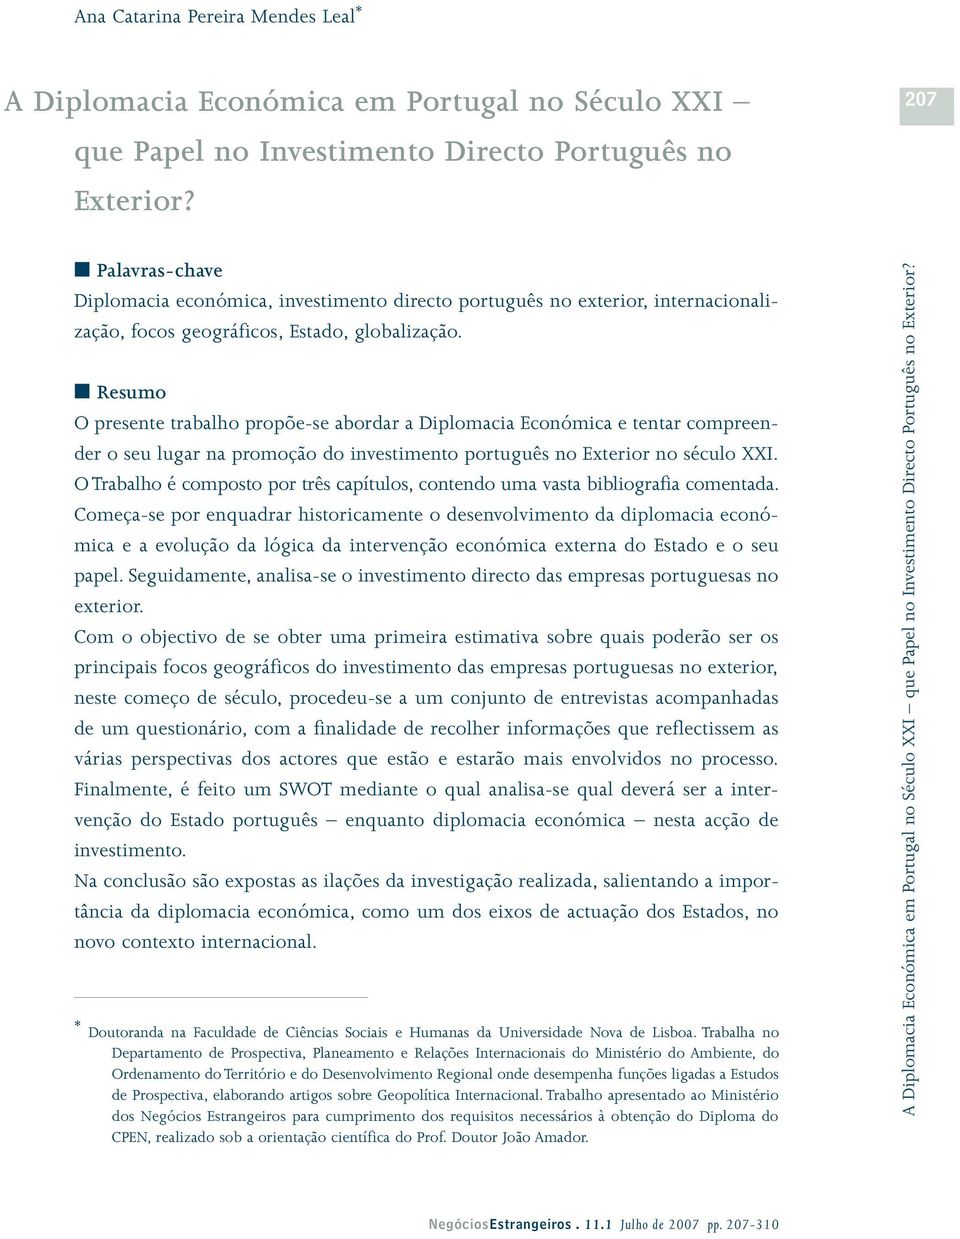 Resumo O presente trabalho propõe-se abordar a Diplomacia Económica e tentar compreender o seu lugar na promoção do investimento português no Exterior no século XXI.